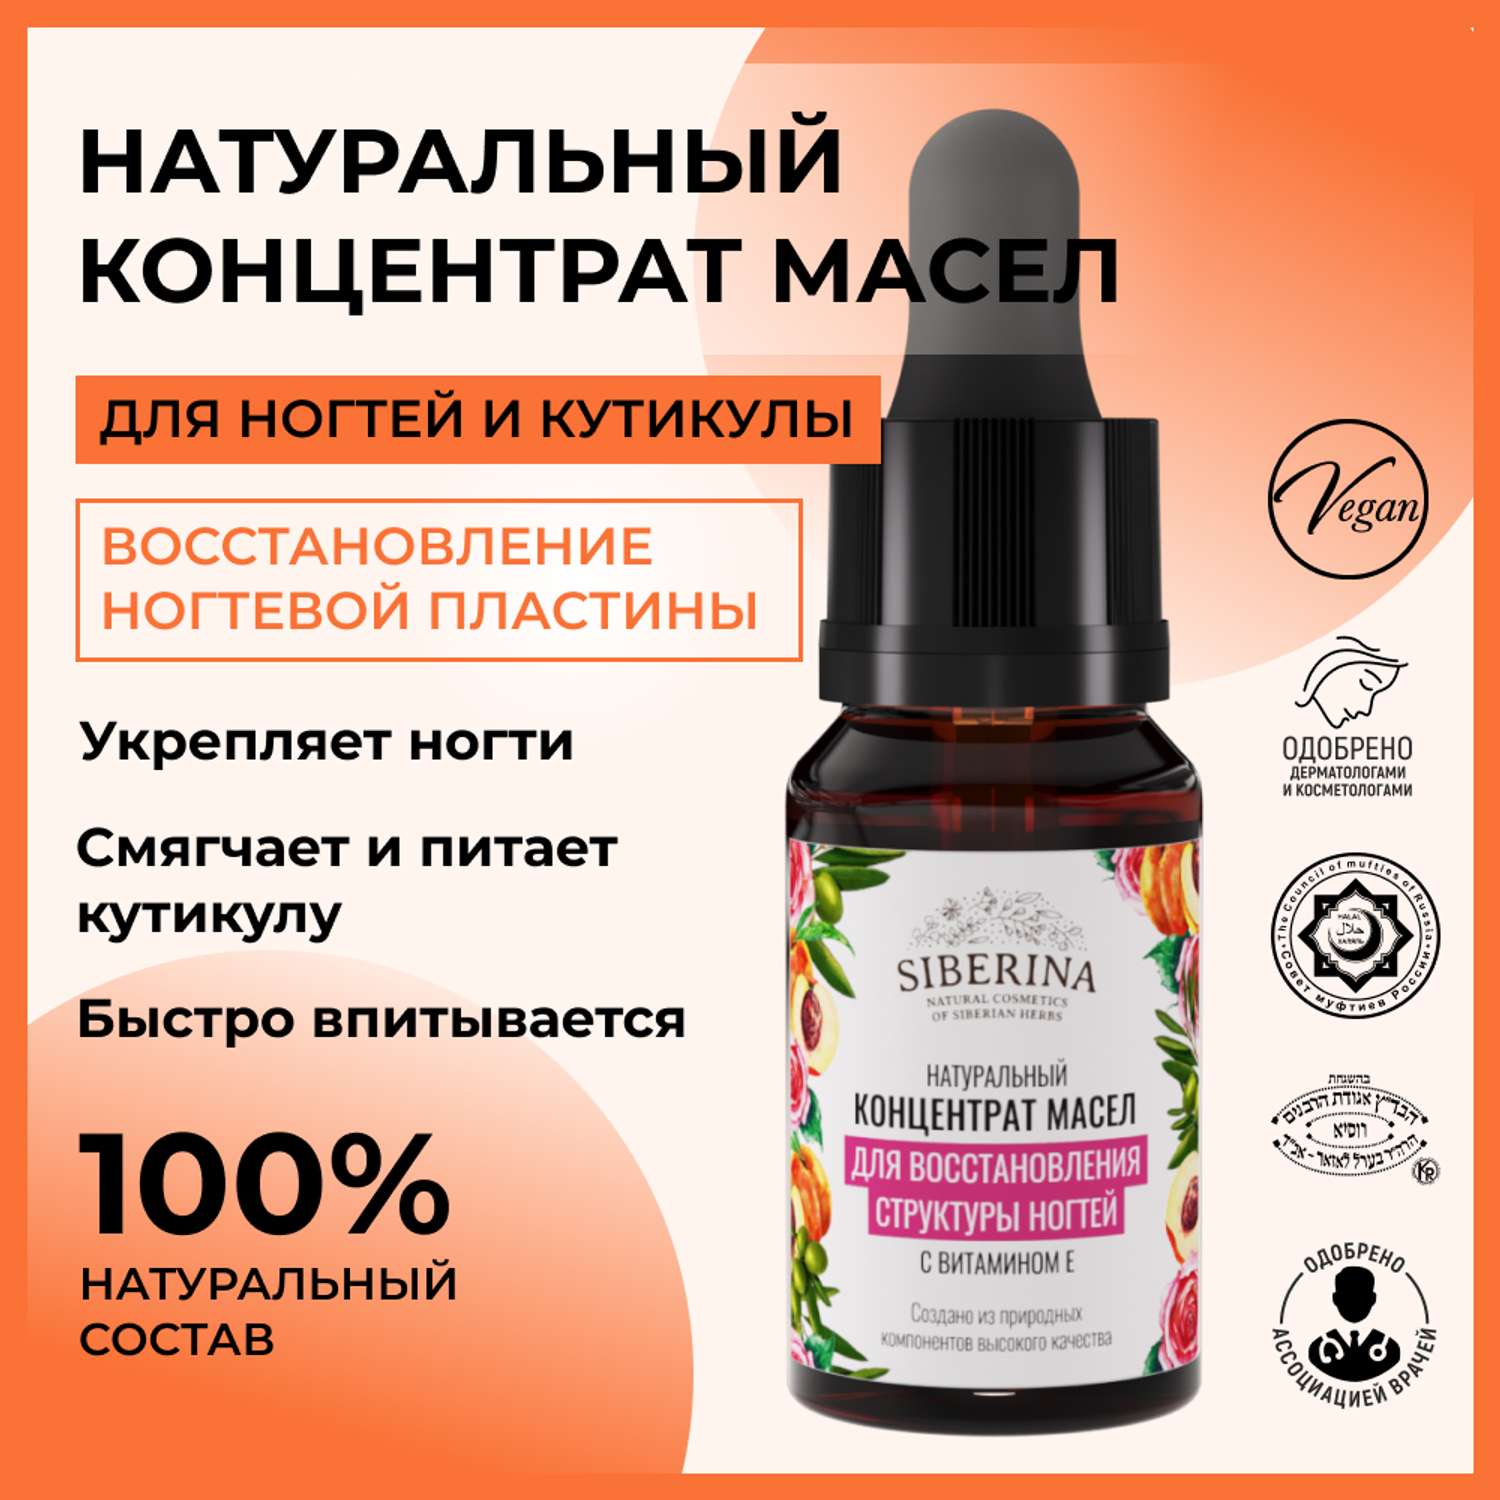 Концентрат масел Siberina натуральный «Для восстановления структуры ногтей» витамином Е 10 мл - фото 2